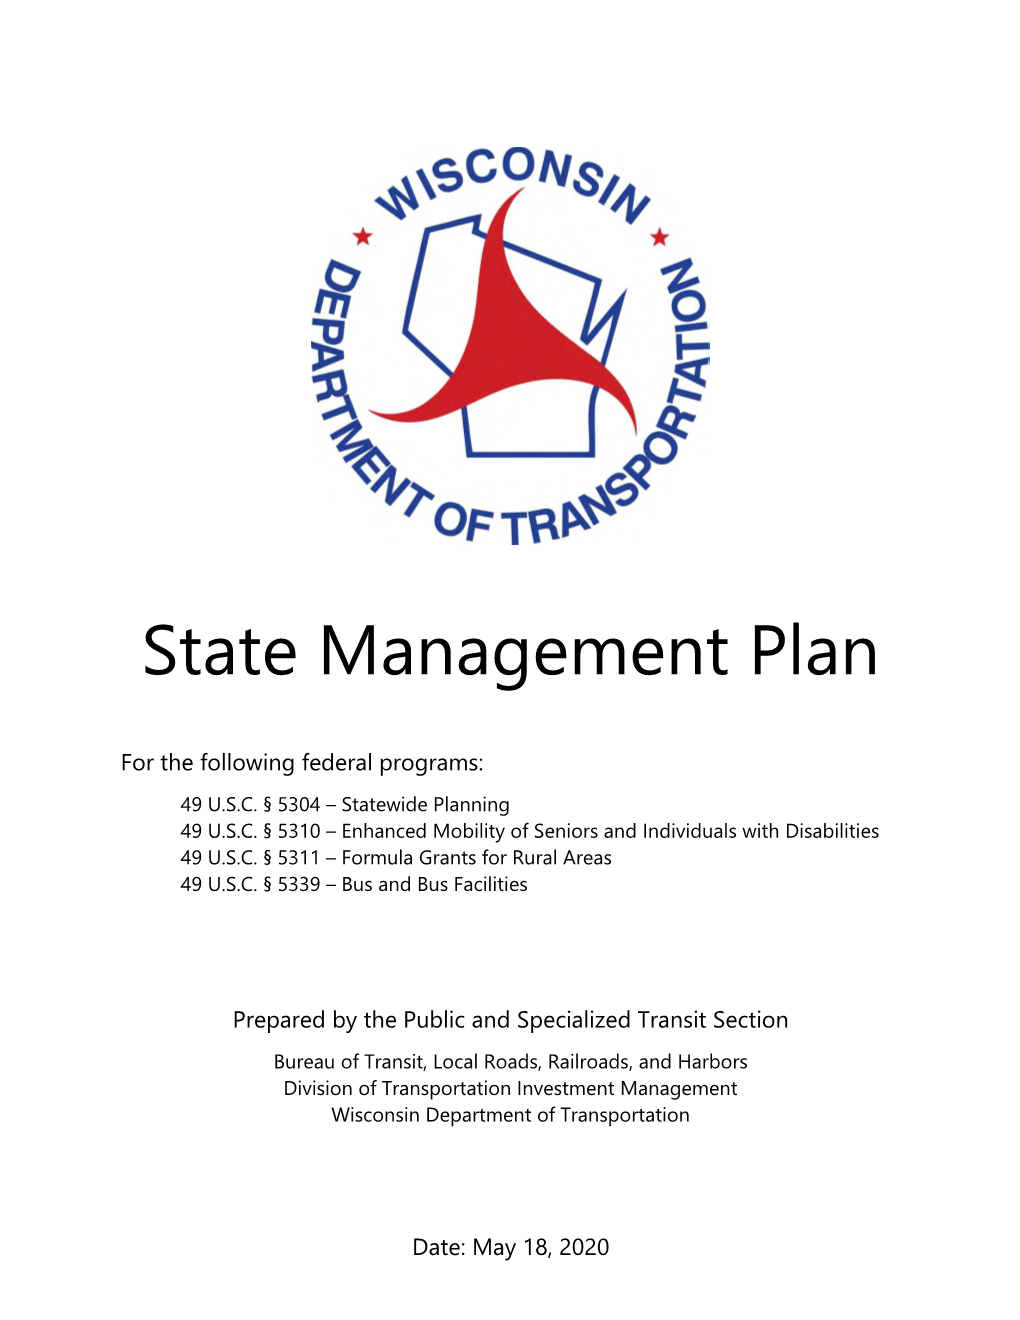 Wisdot State Management Plan for Transit